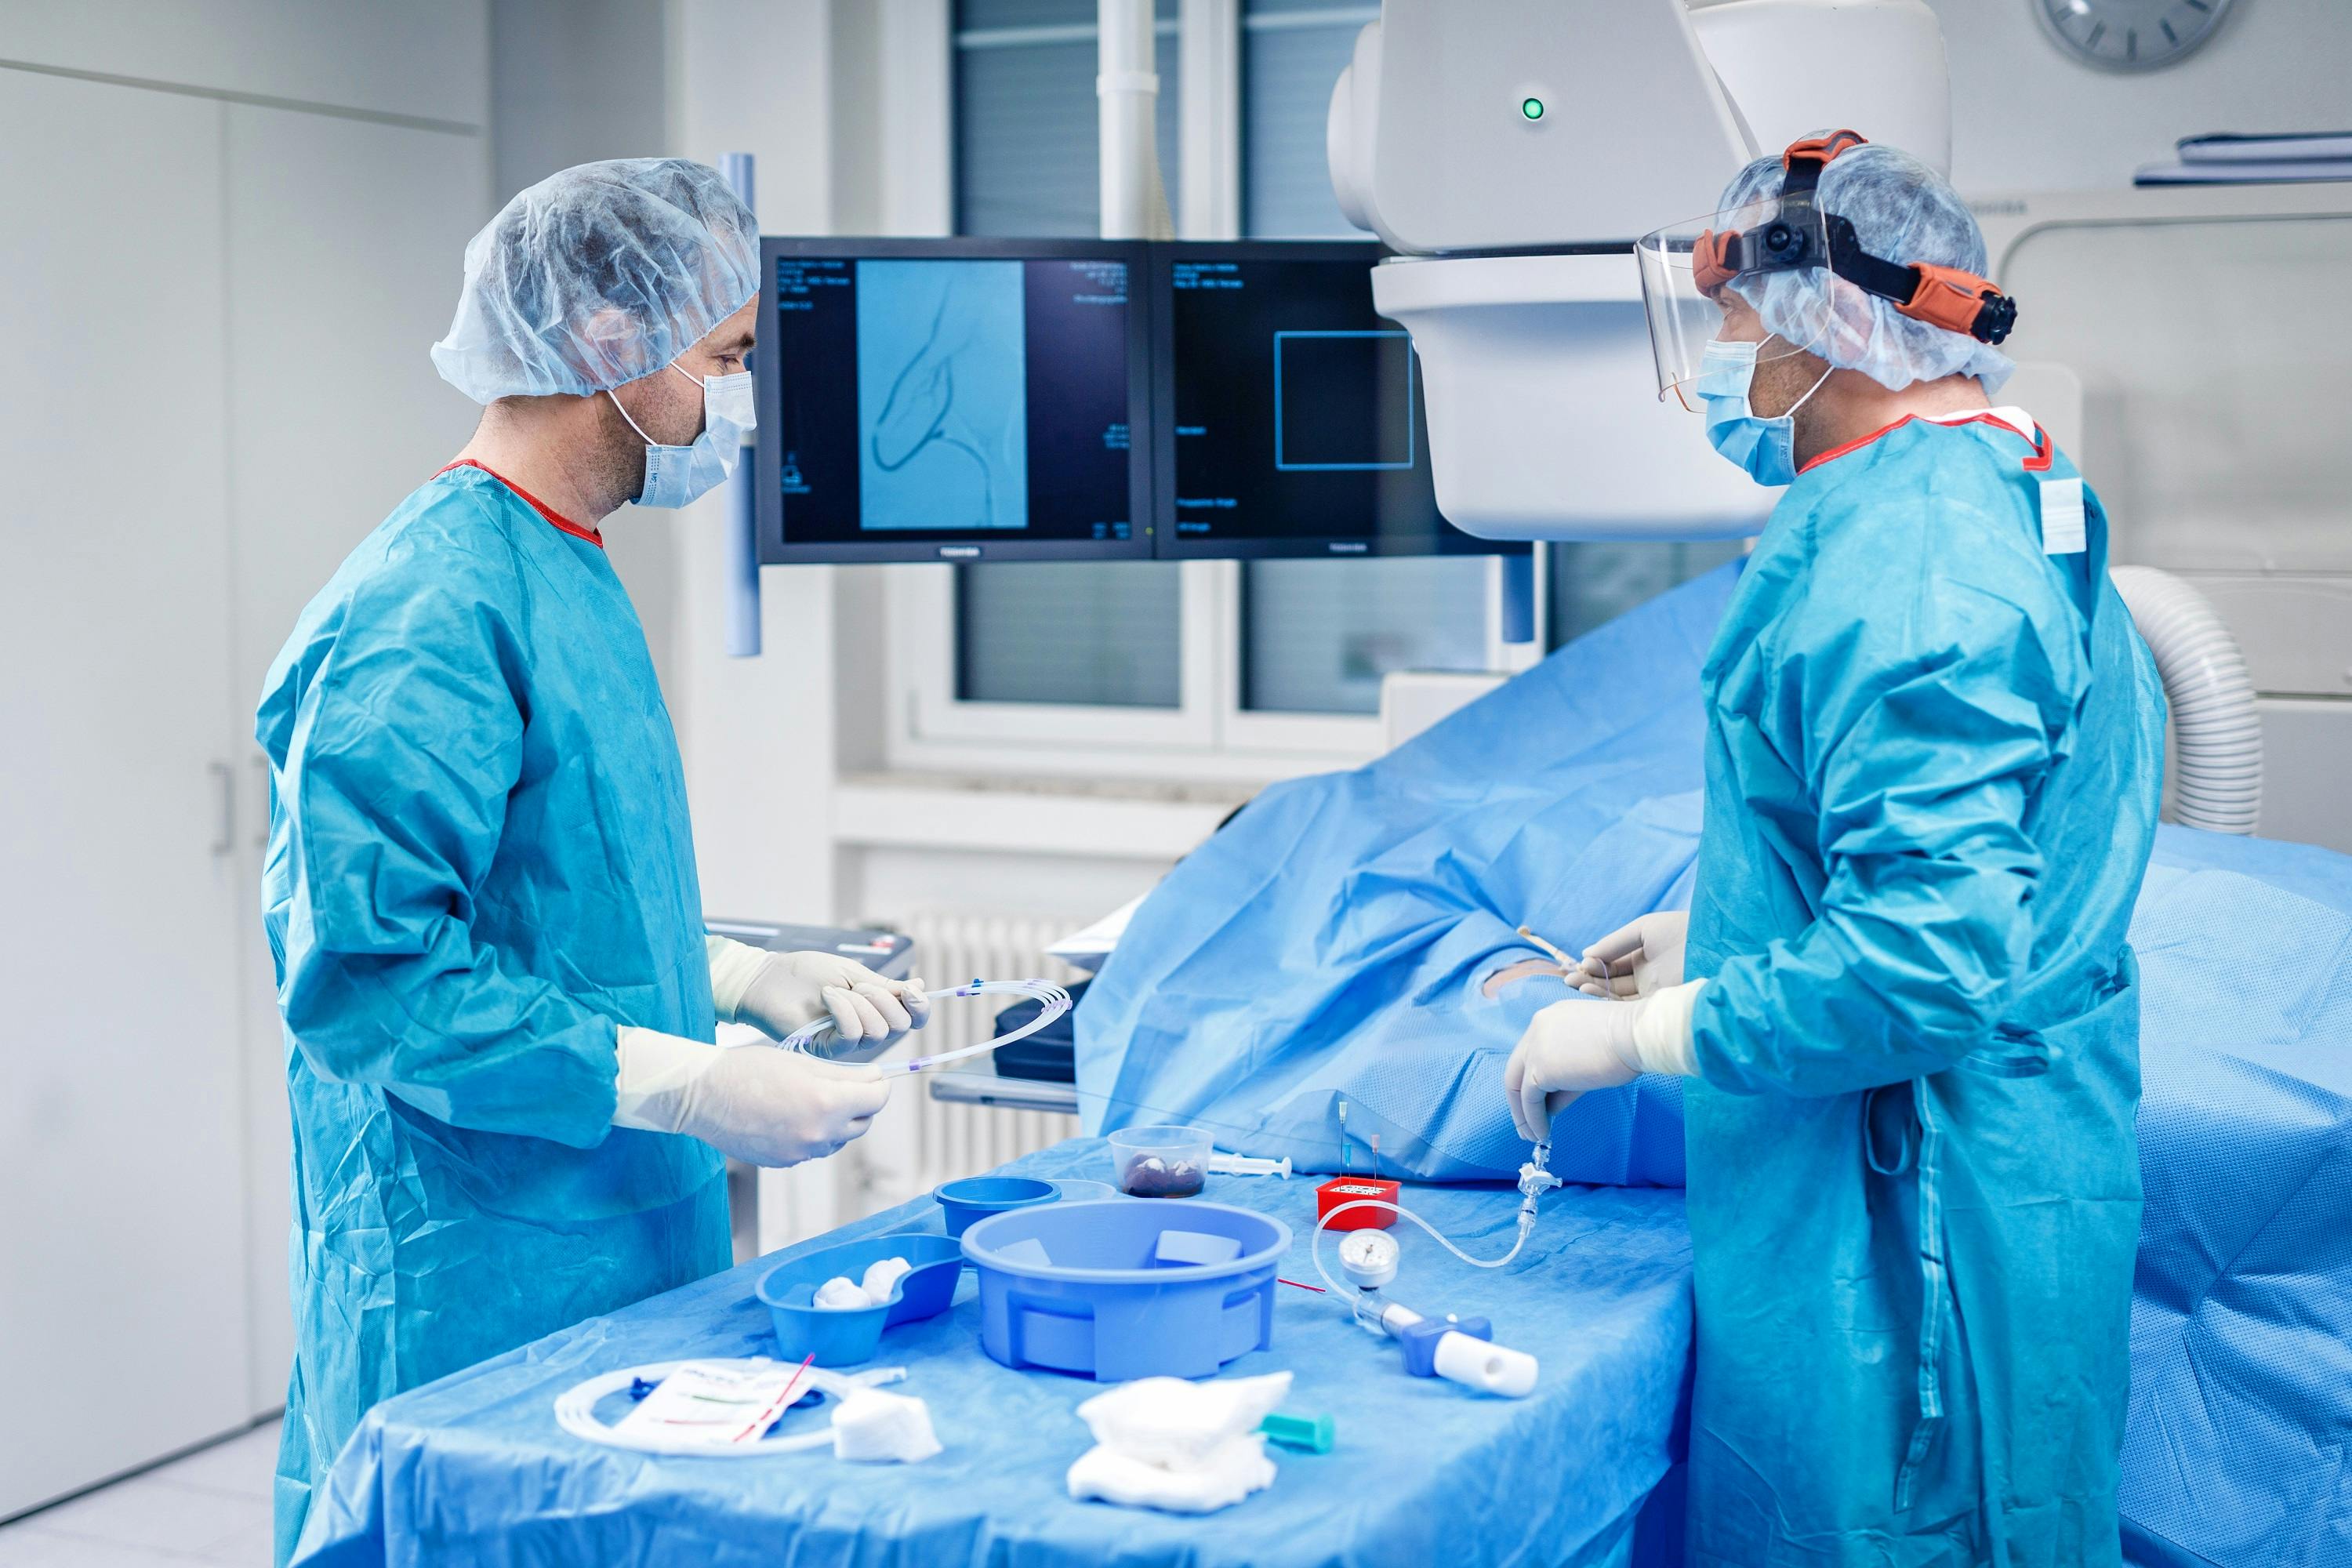 Zwei Chirurgen in steriler Kleidung bei der Arbeit im Operationssaal mit medizinischen Instrumenten und einem Überwachungsmonitor.